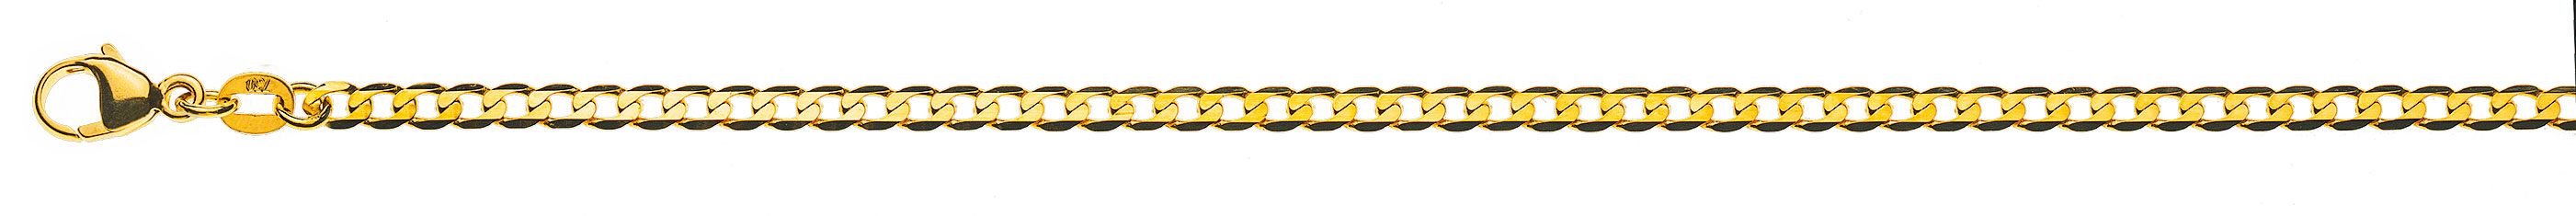 AURONOS Prestige Halskette Gelbgold 18K Panzerkette extraflach diamantiert 60cm 3.1mm